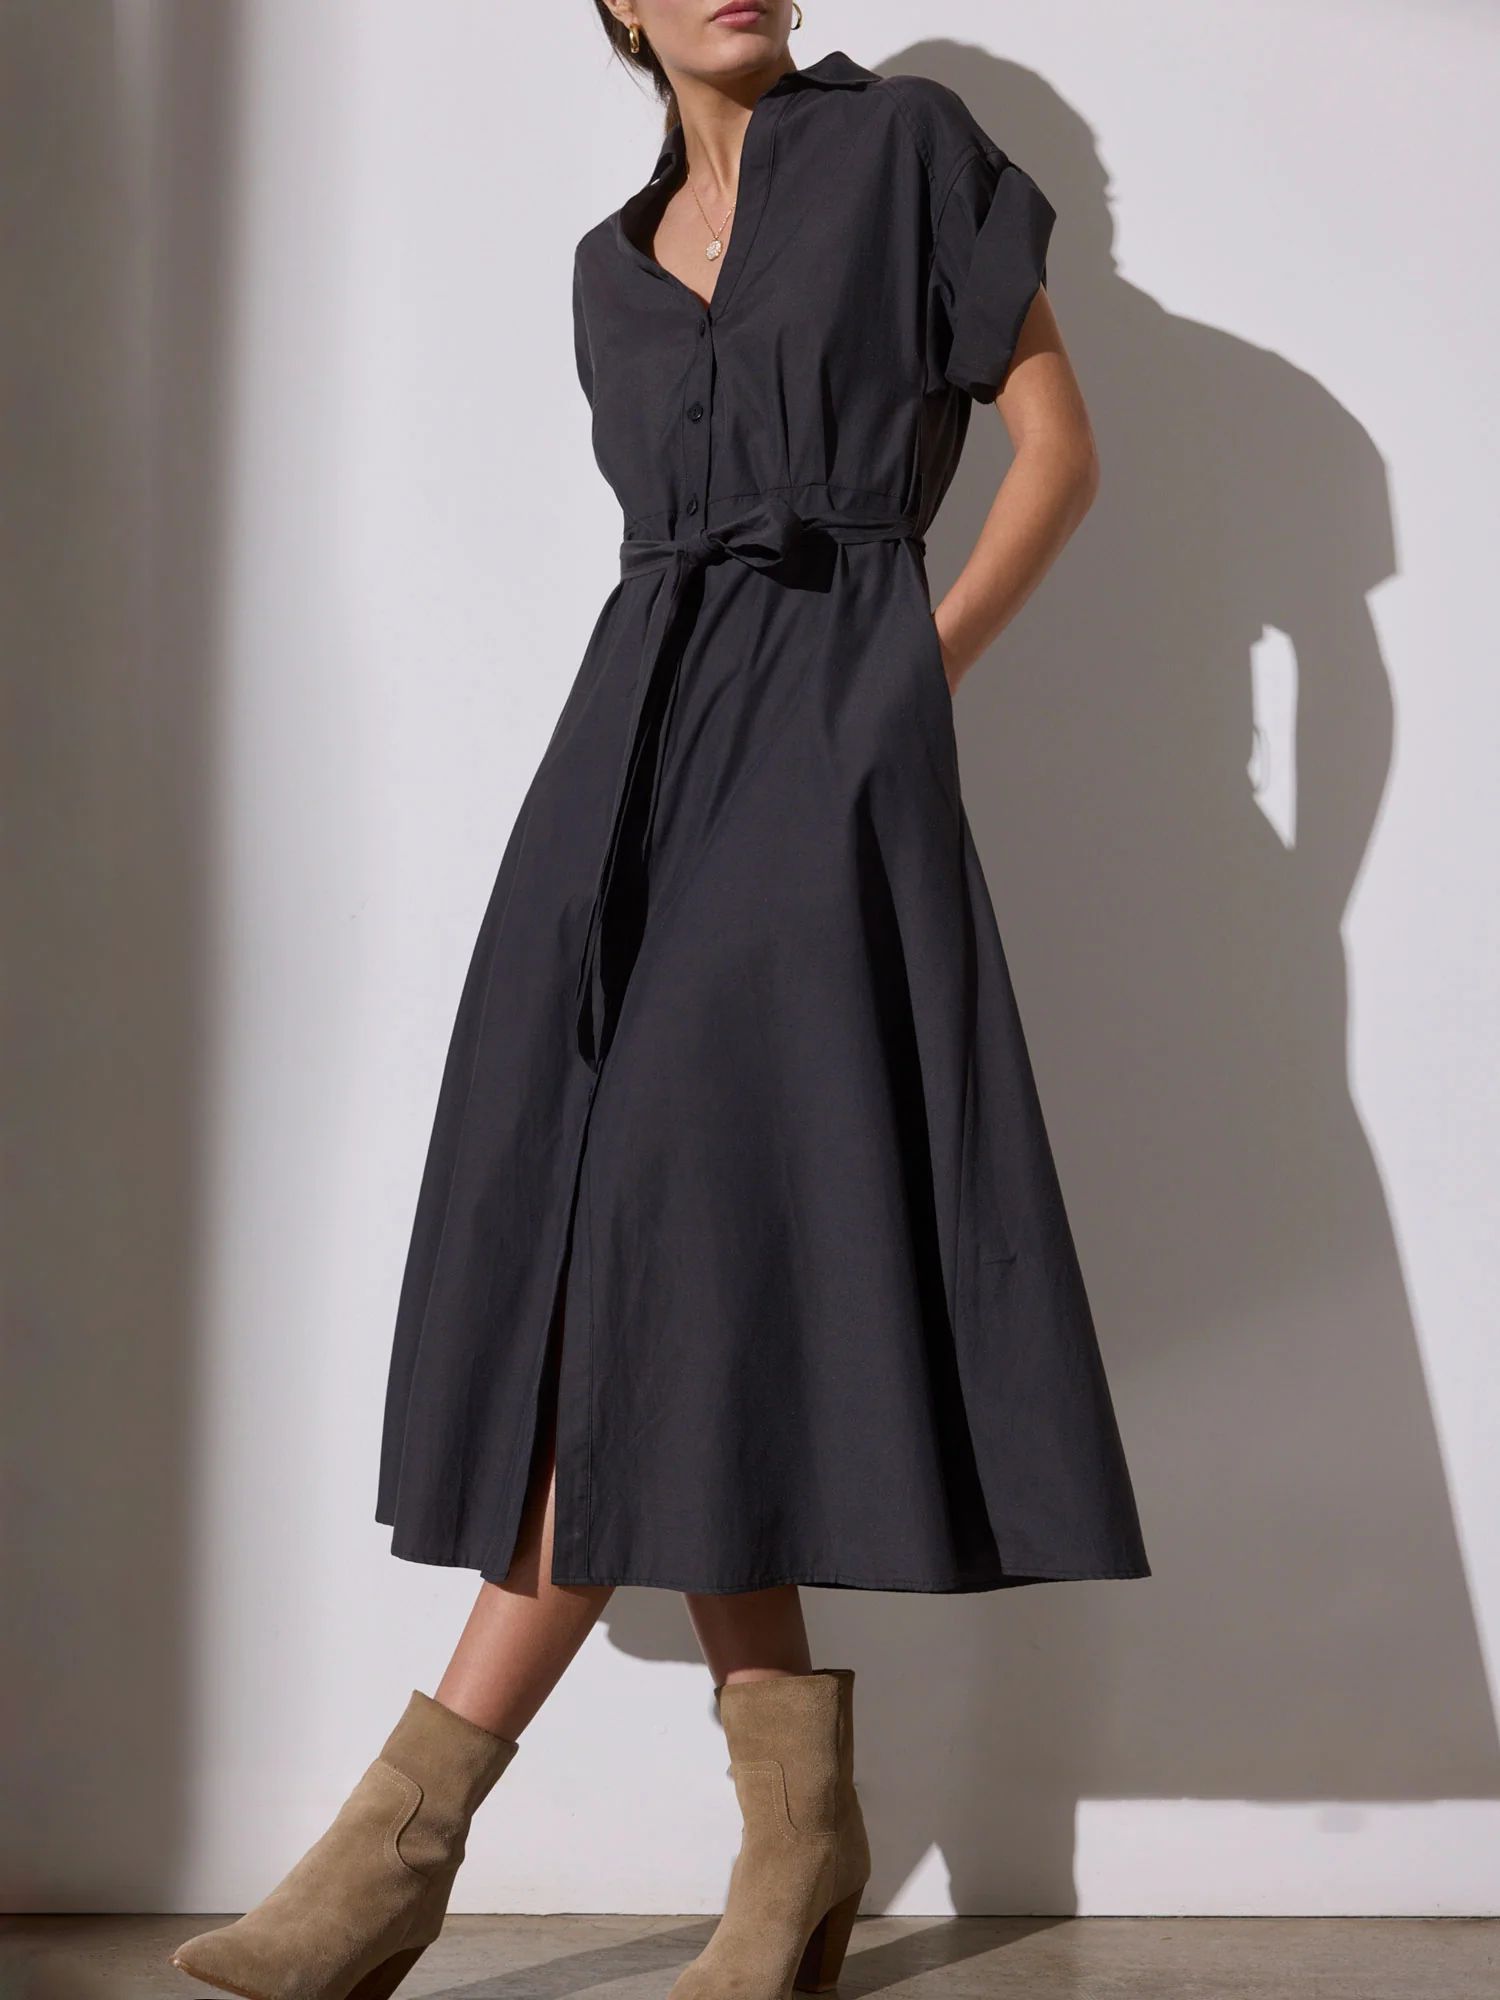 Brochu Walker | Women's Fia Belted Dress in Washed Black | Brochu Walker